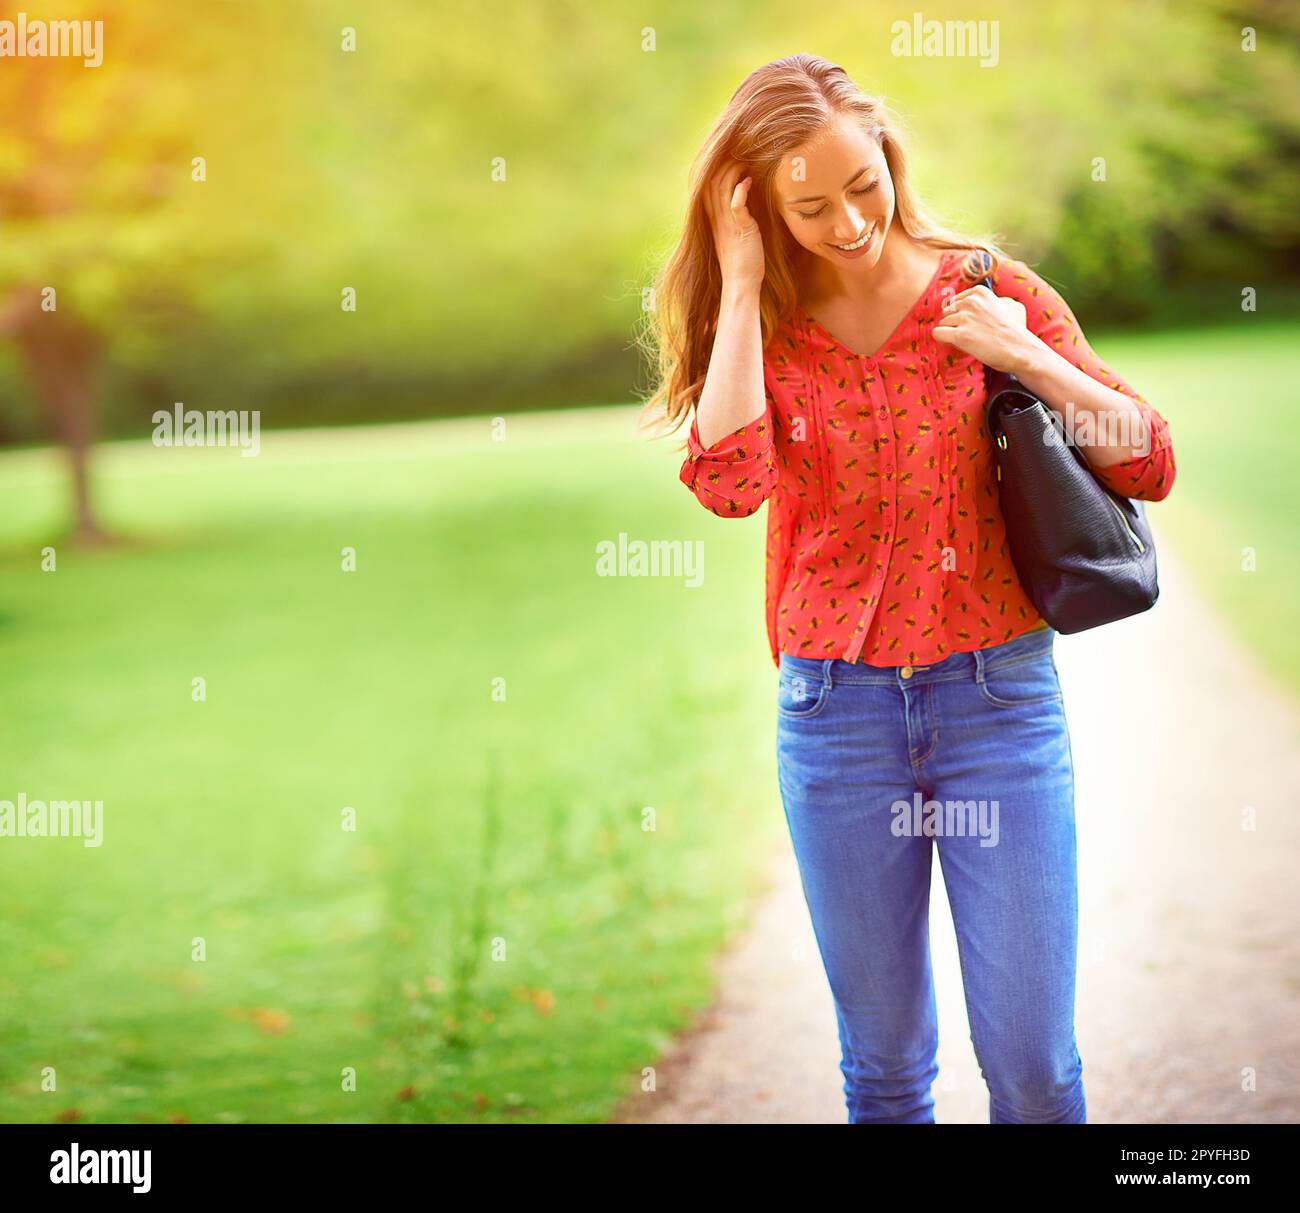 Momente der Glückseligkeit im Freien. Eine junge Frau auf einem Spaziergang durch den Park. Stockfoto